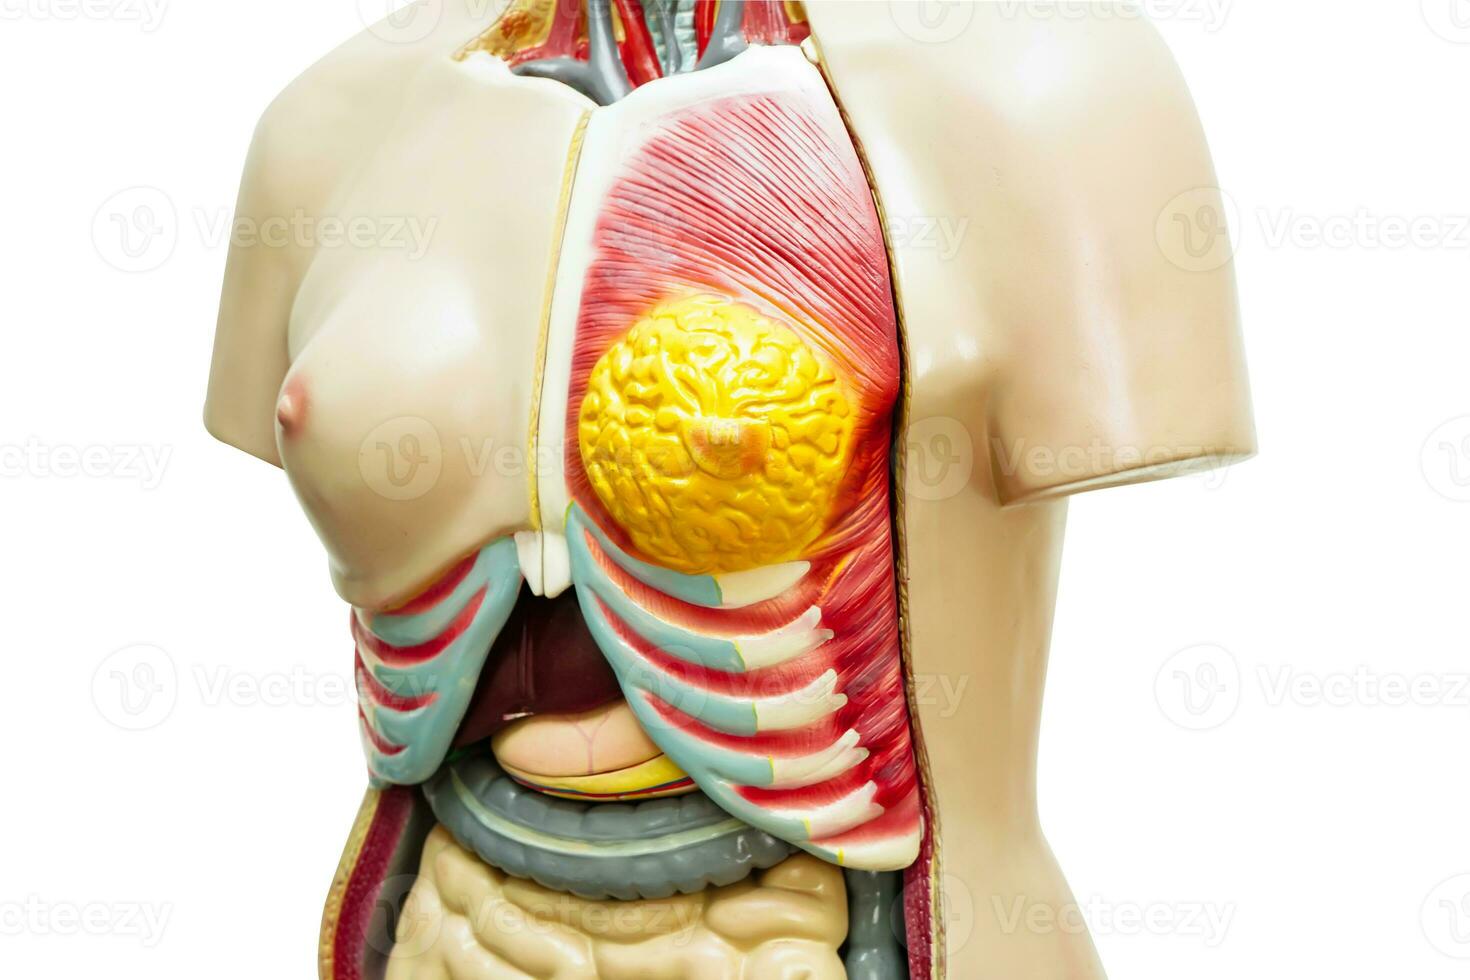 umano corpo anatomia organo modello per studia formazione scolastica medico corso. foto